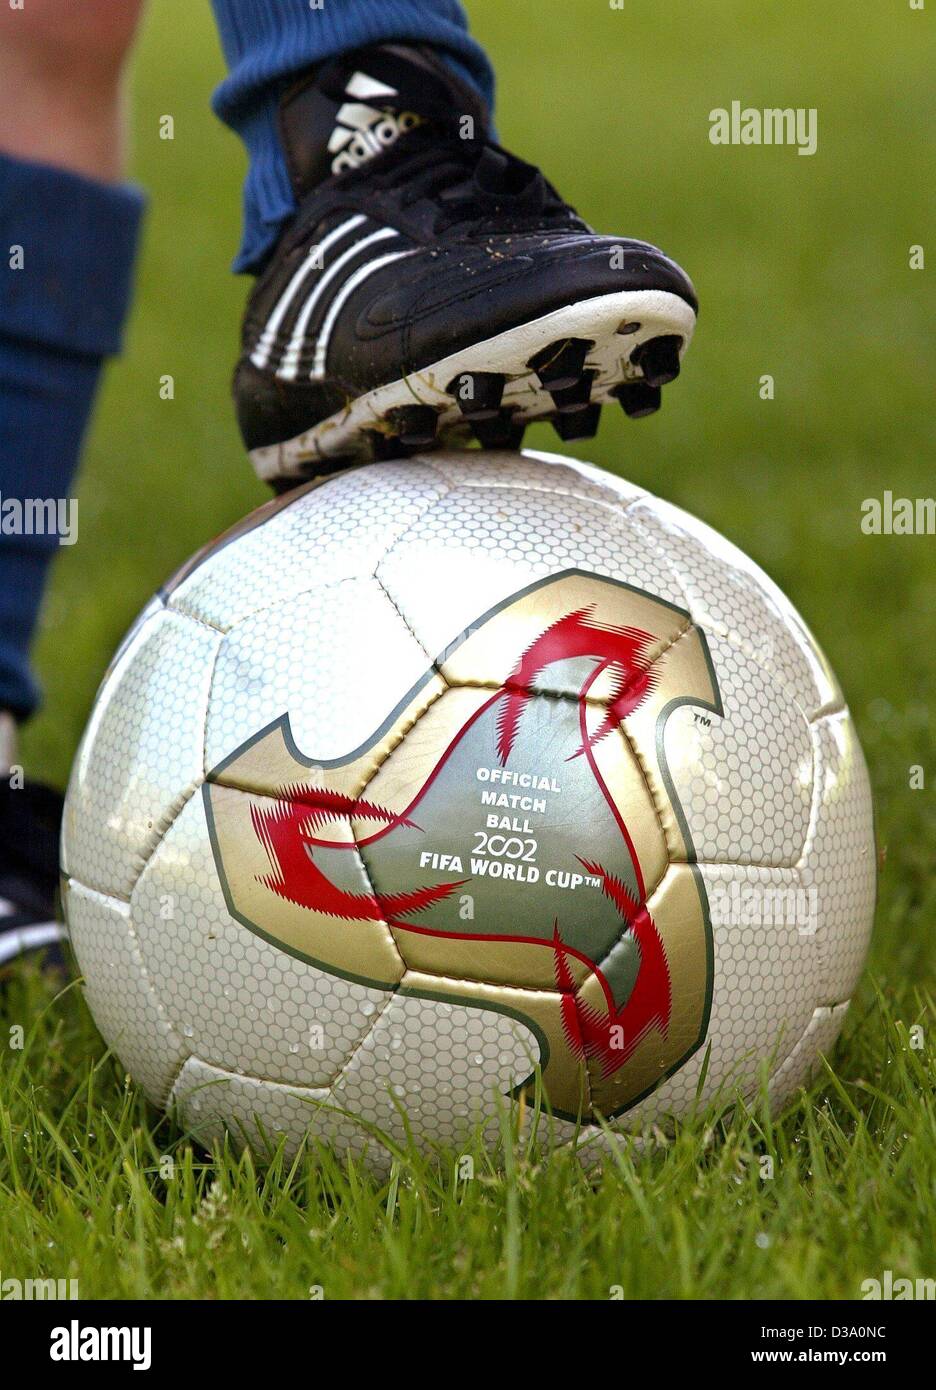 (Dpa) - die neue Soccer ball "Fevernova", Foto in Dormagen, Deutschland, 13. Mai 2002. Der offizielle Ball werden während der WM in Japan und Südkorea. Der Ball ist größer, leichter und damit schneller als die "alten" Fußbälle und verursachte einen Streit unter den Spielern schon ob es ich Stockfoto